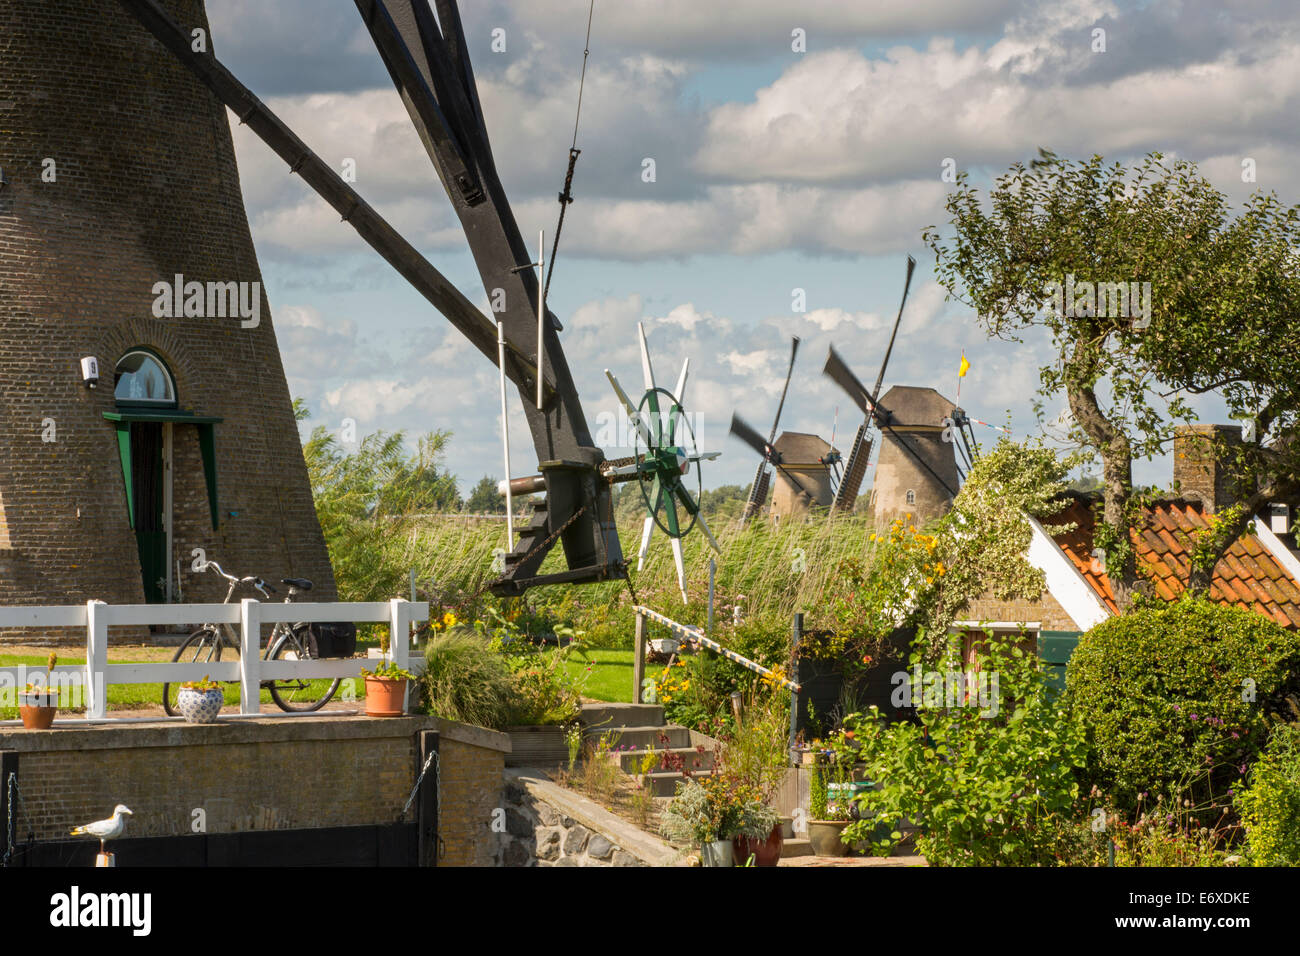 Netherlands, Kinderdijk, Windmills in Alblasserwaard polder, Unesco World Heritage site Stock Photo